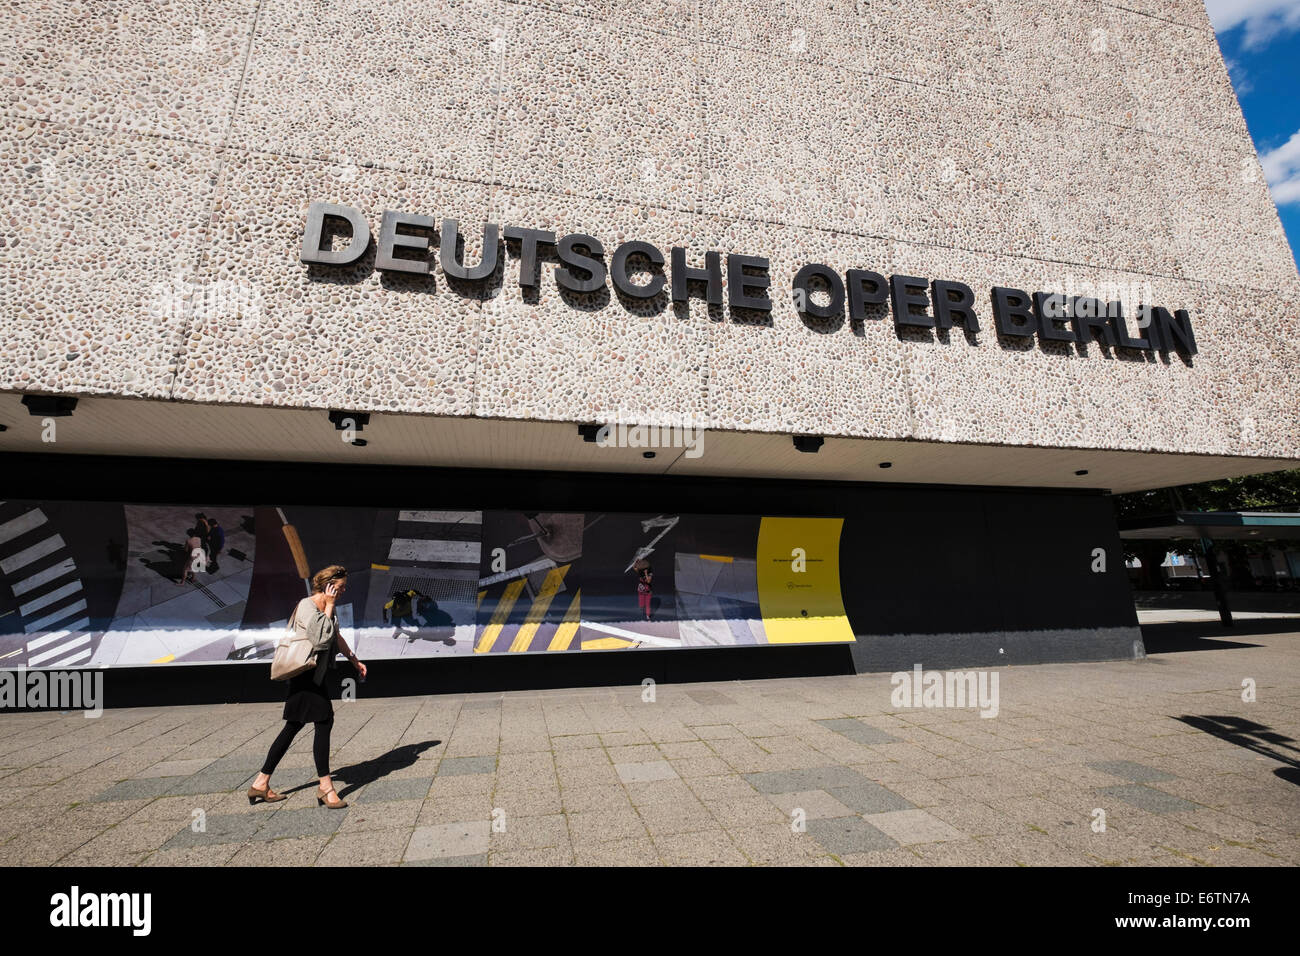 Vue extérieure de l'opéra allemand de l'opéra allemand à Berlin Allemagne Banque D'Images